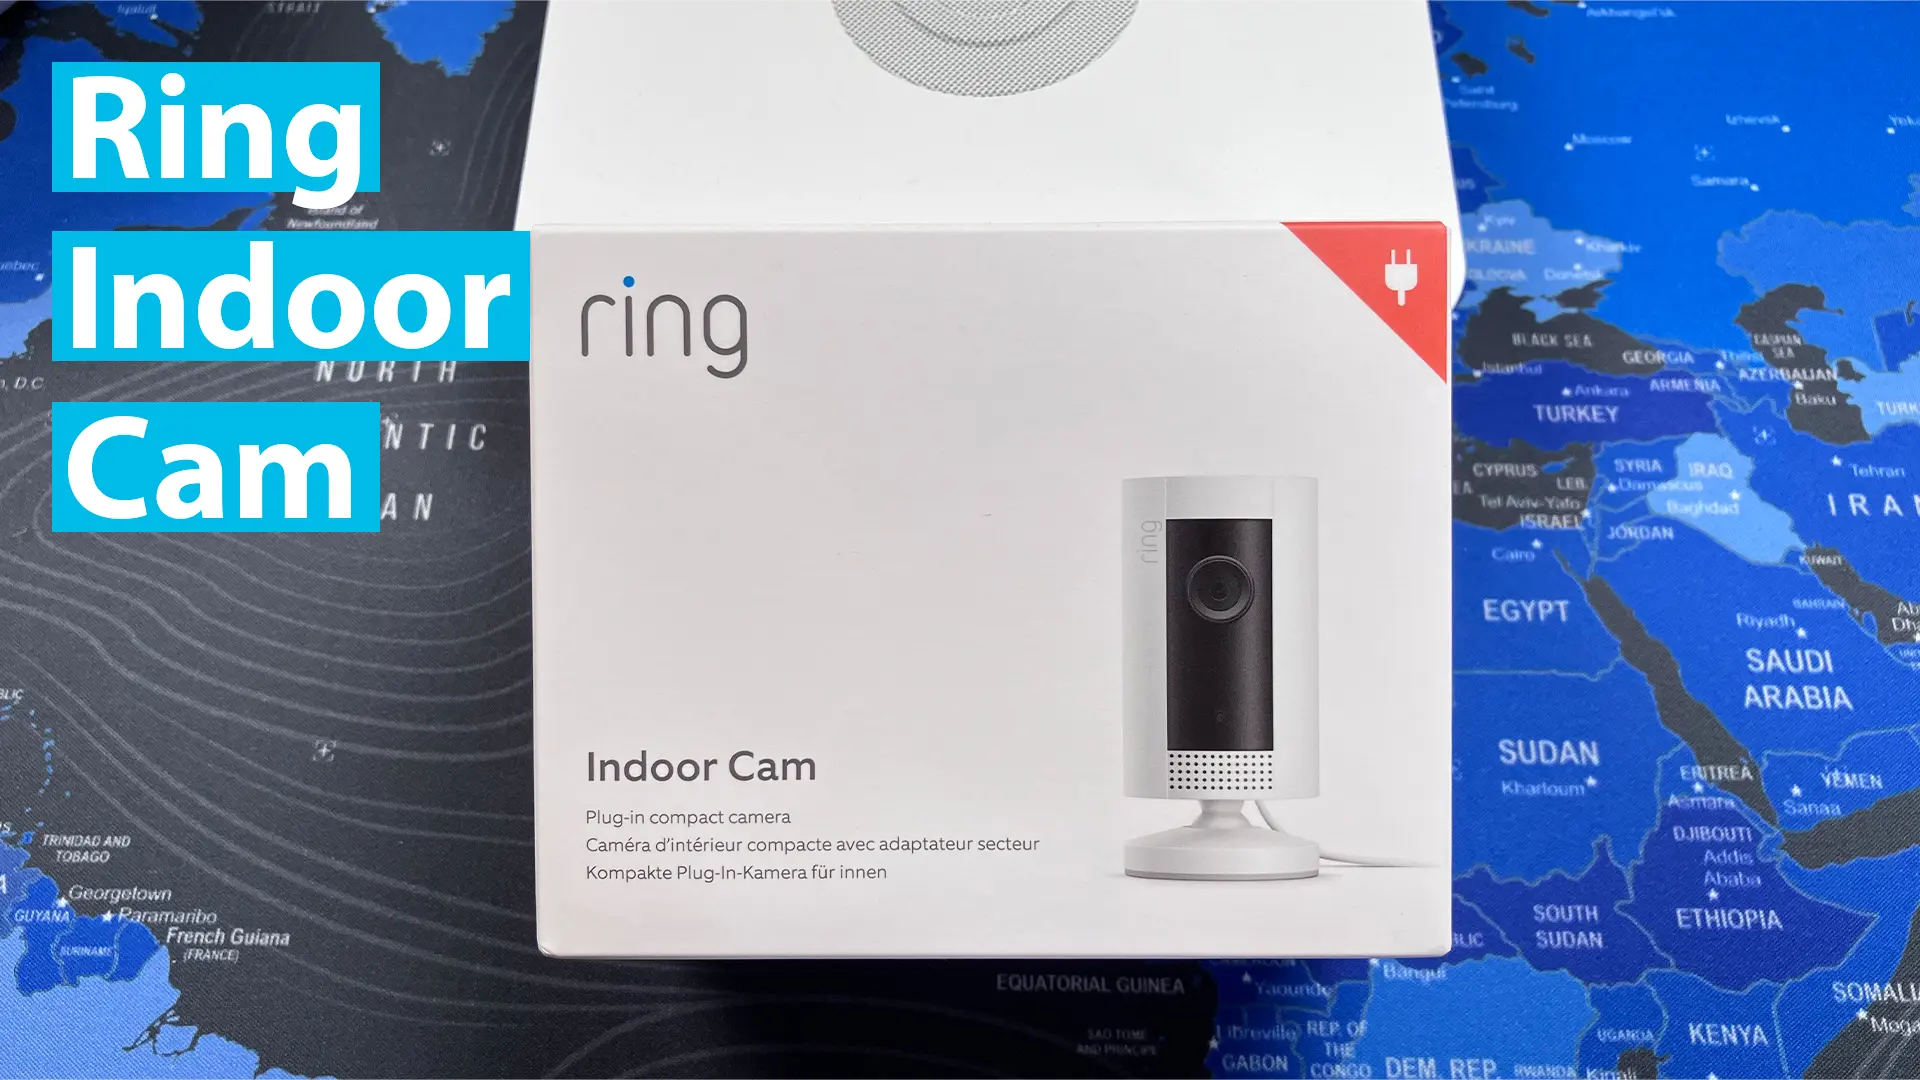 Protege tu hogar y familia: Ring Indoor Cam, la mejor opción